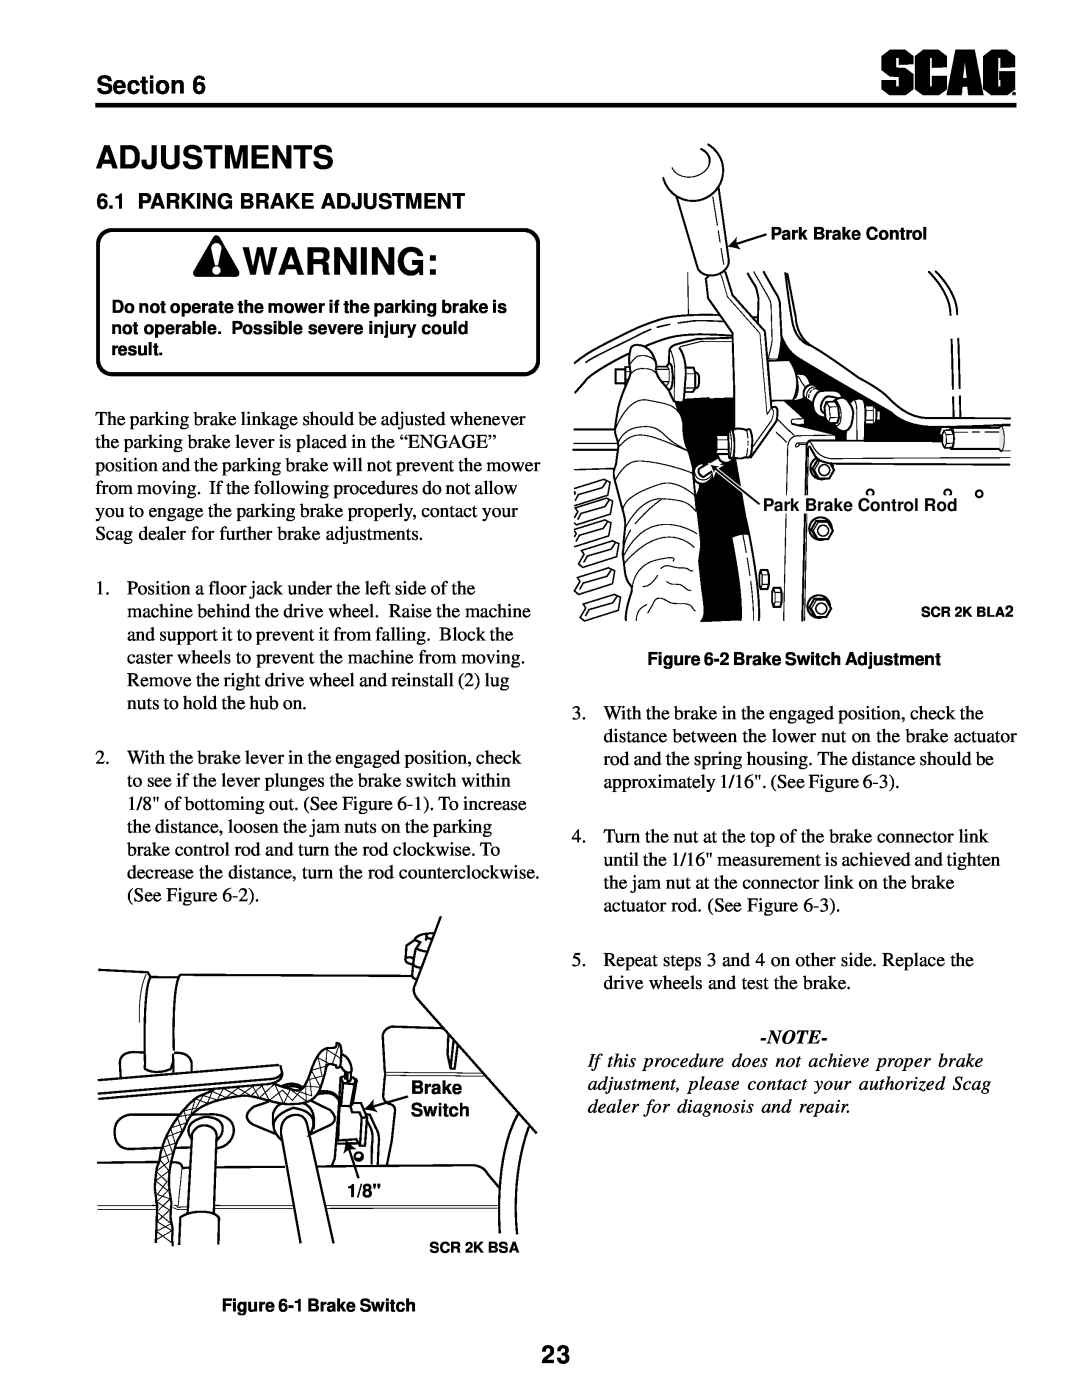 MB QUART SCR manual Adjustments, Parking Brake Adjustment, Section 